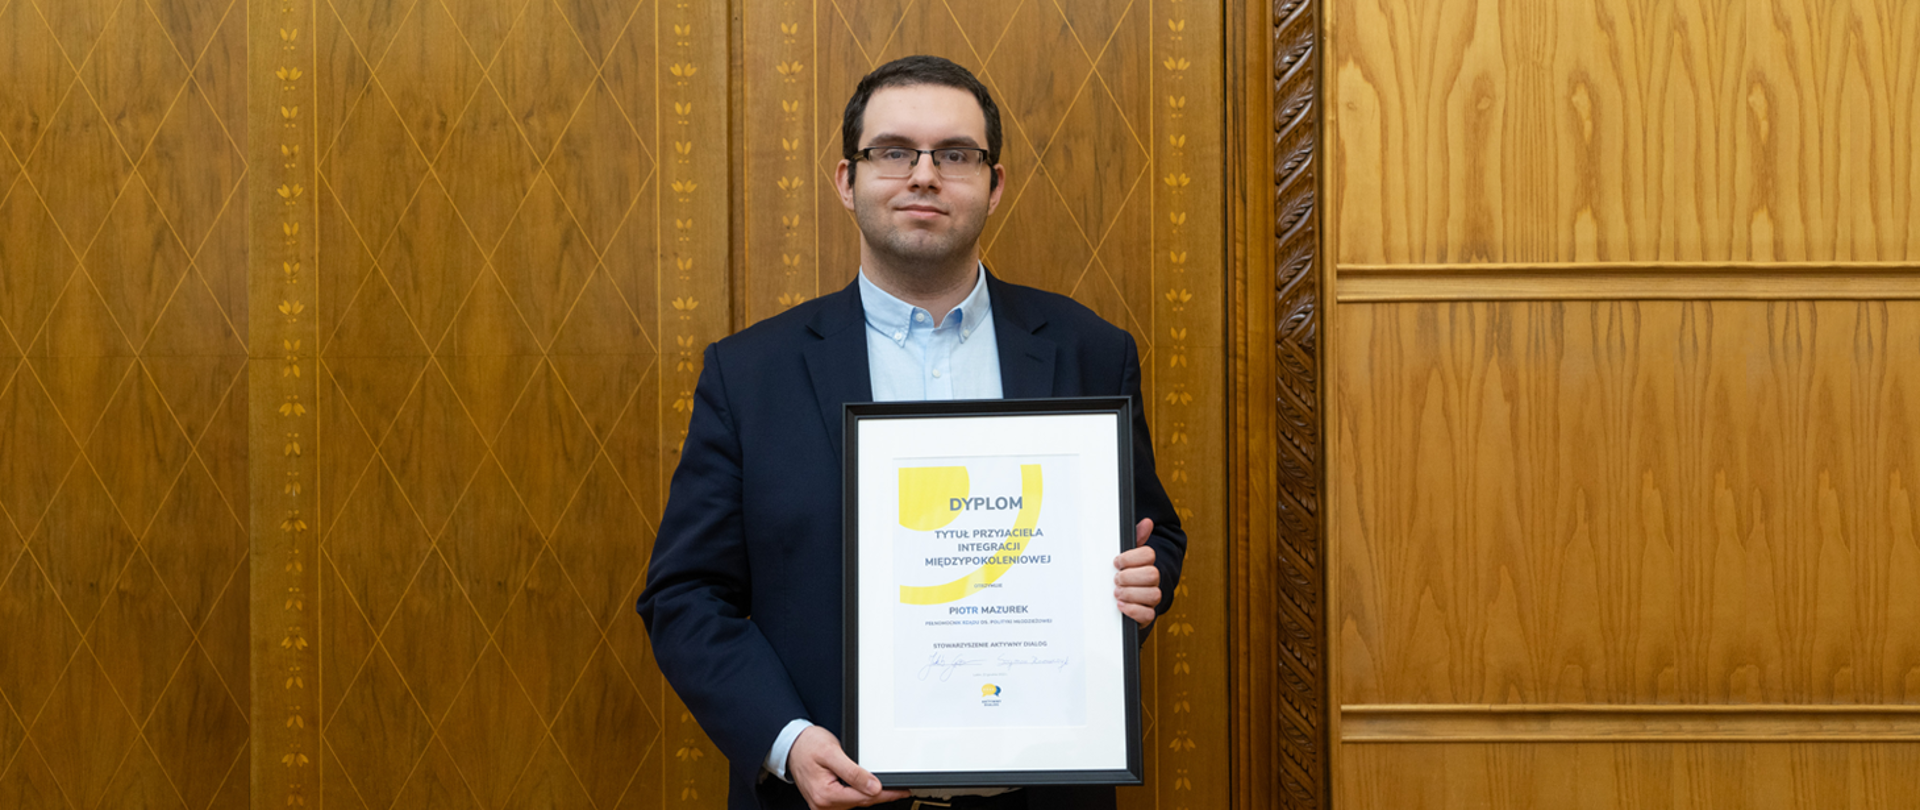 Min. Piotr Mazurek wyróżniony Nagrodą Przyjaciela Integracji Międzypokoleniowej 